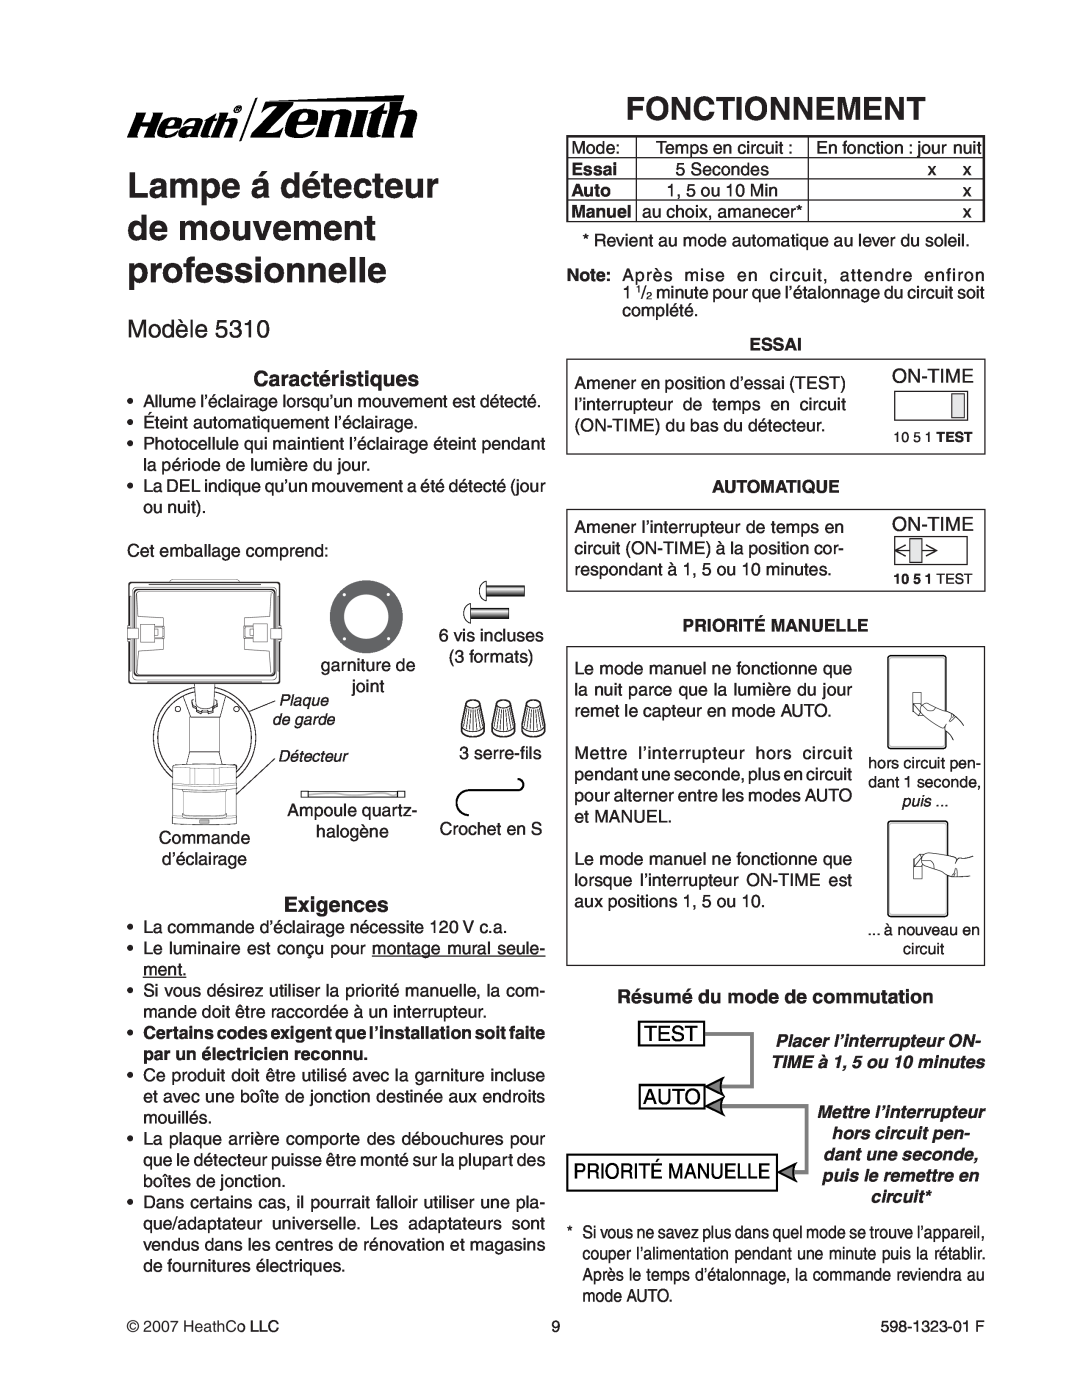 Heath Zenith 5310 manual Lampe á détecteur de mouvement professionnelle, Fonctionnement, Modèle, Test, Auto, On-Time, Essai 